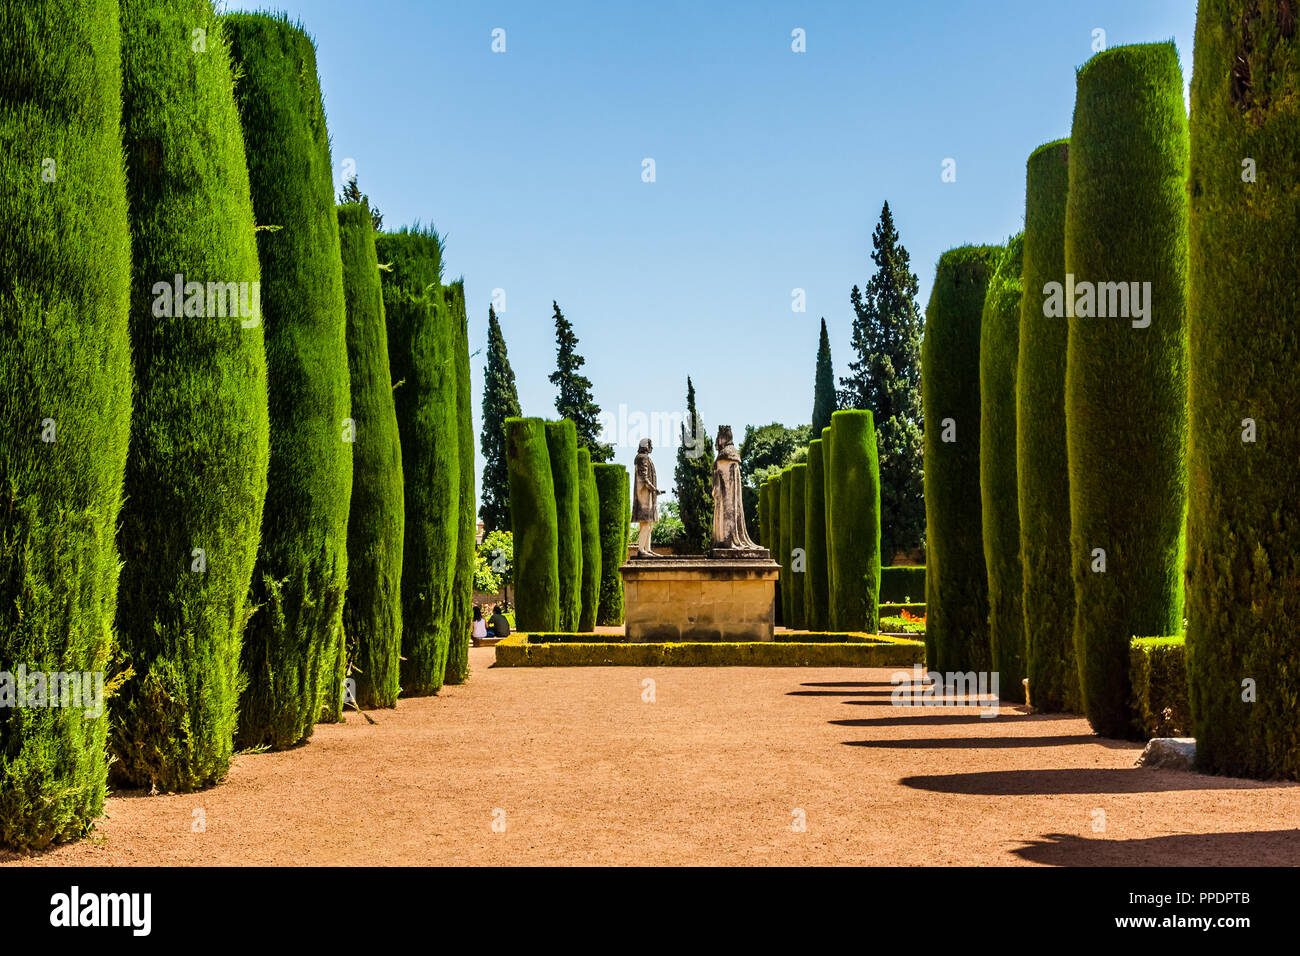 Gardens of the Alcazar de los Reyes Cristianos, (Royal Botanical Gardens), Cordoba, Spain Stock Photo